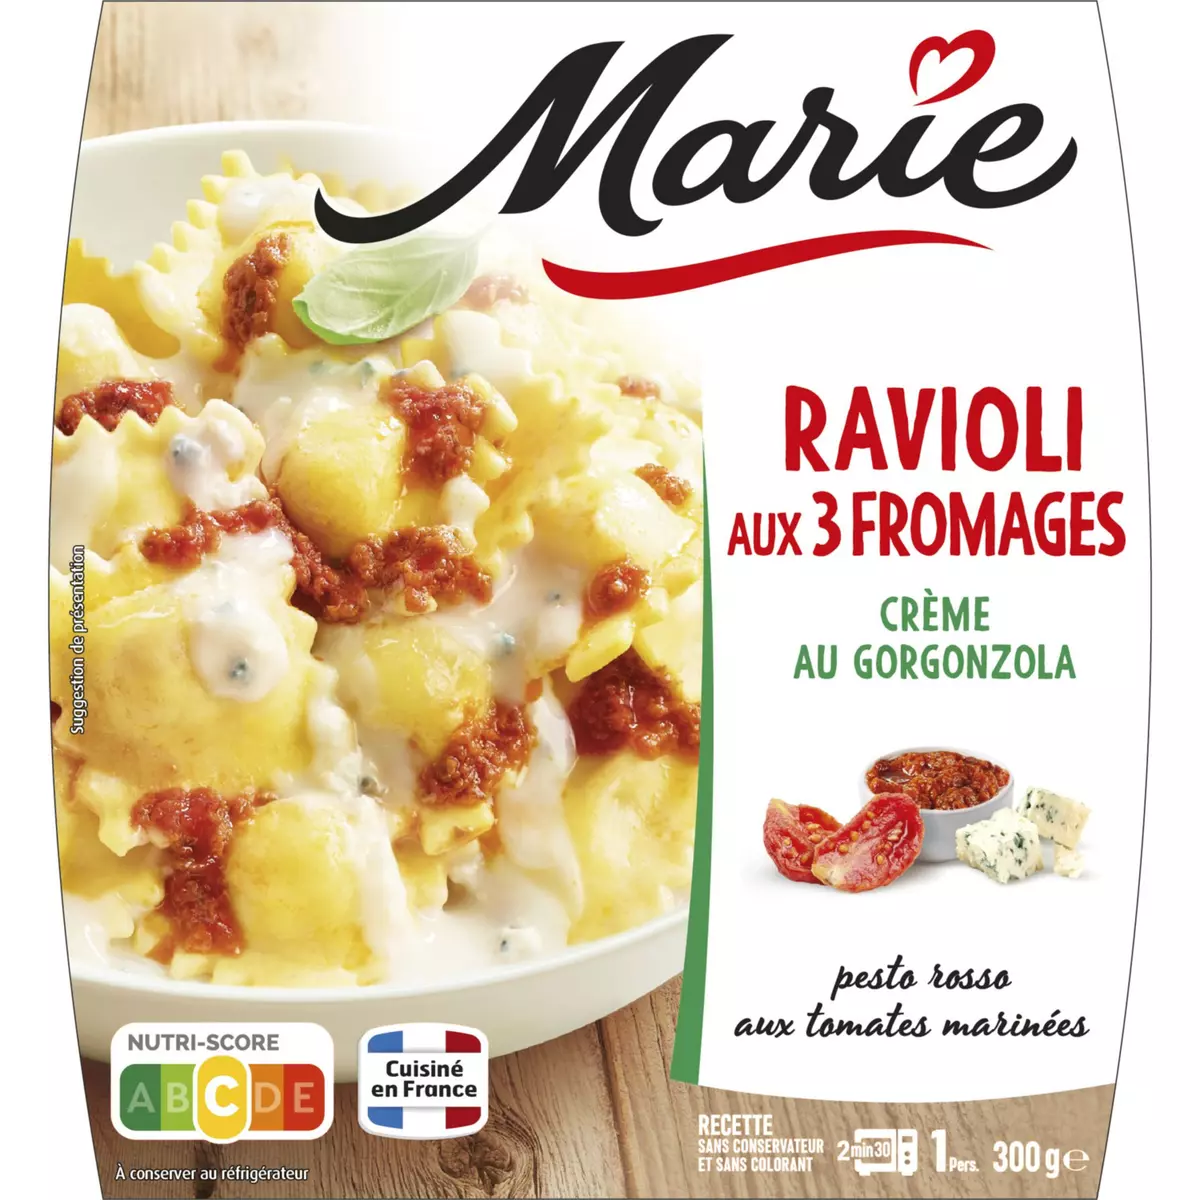 MARIE Ravioli aux 3 fromages crème au gorgonzola sans couverts 1 portion 300g